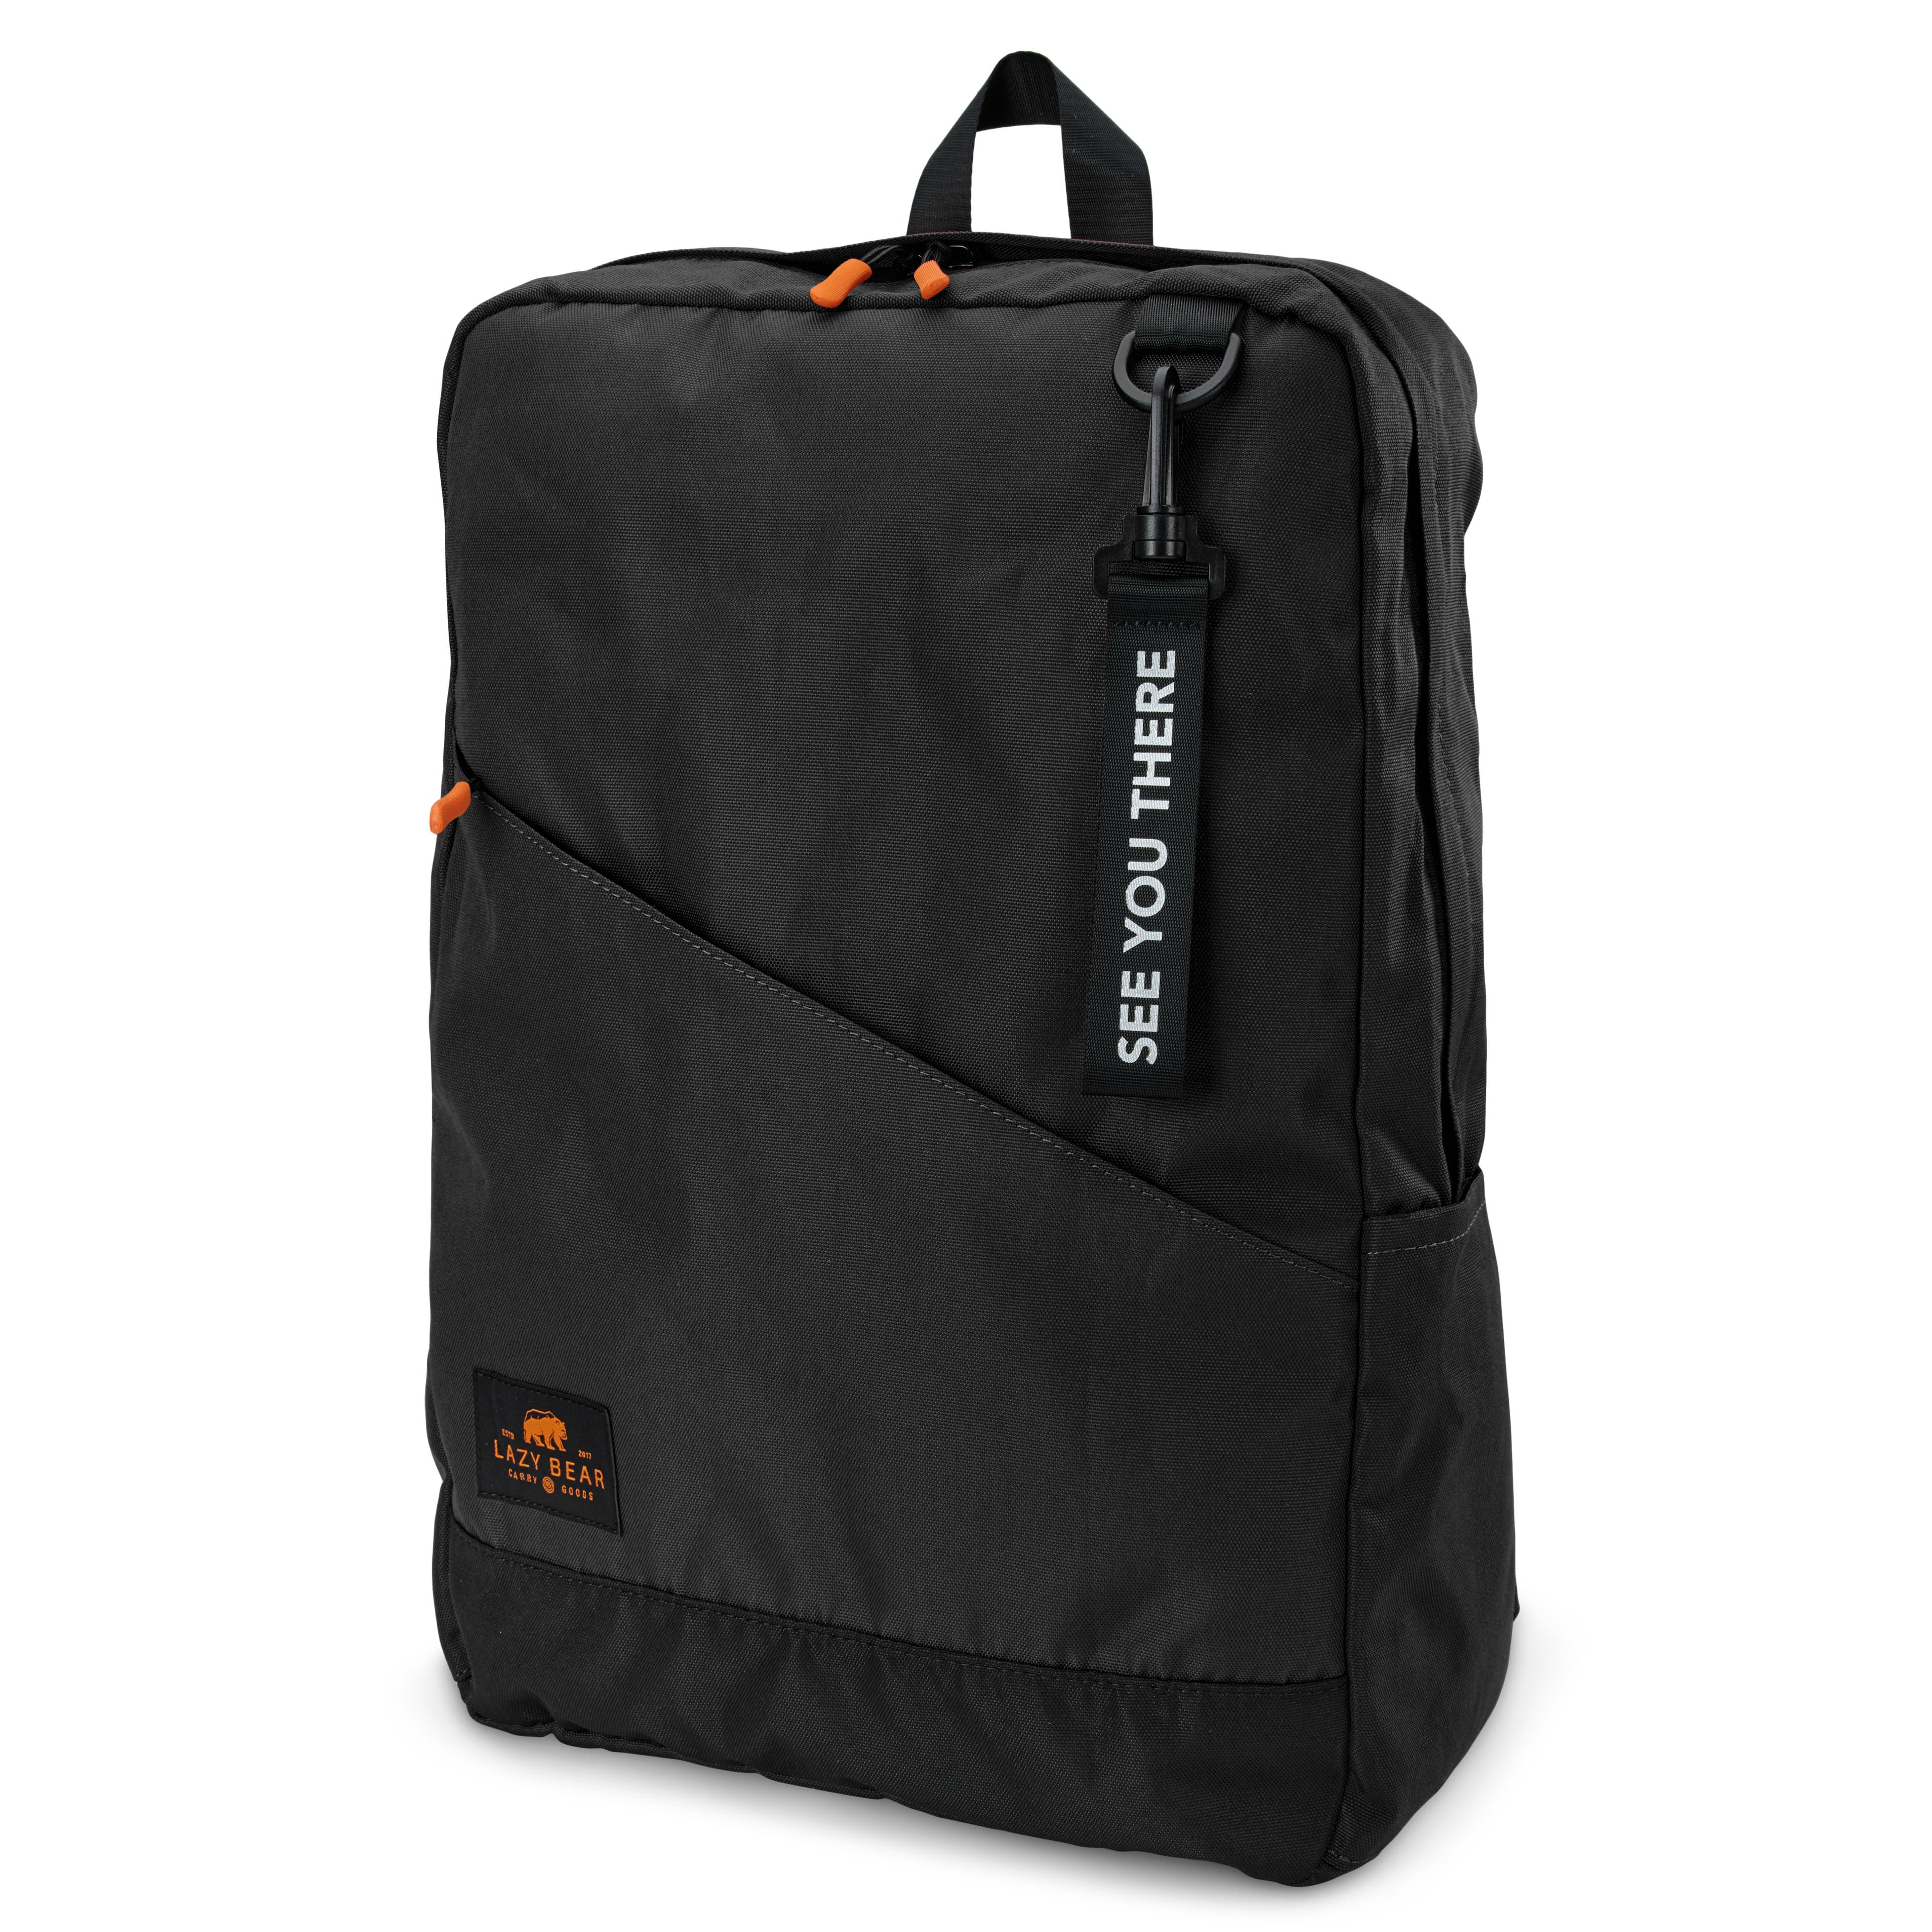 Lemont Black Foldable Backpack 